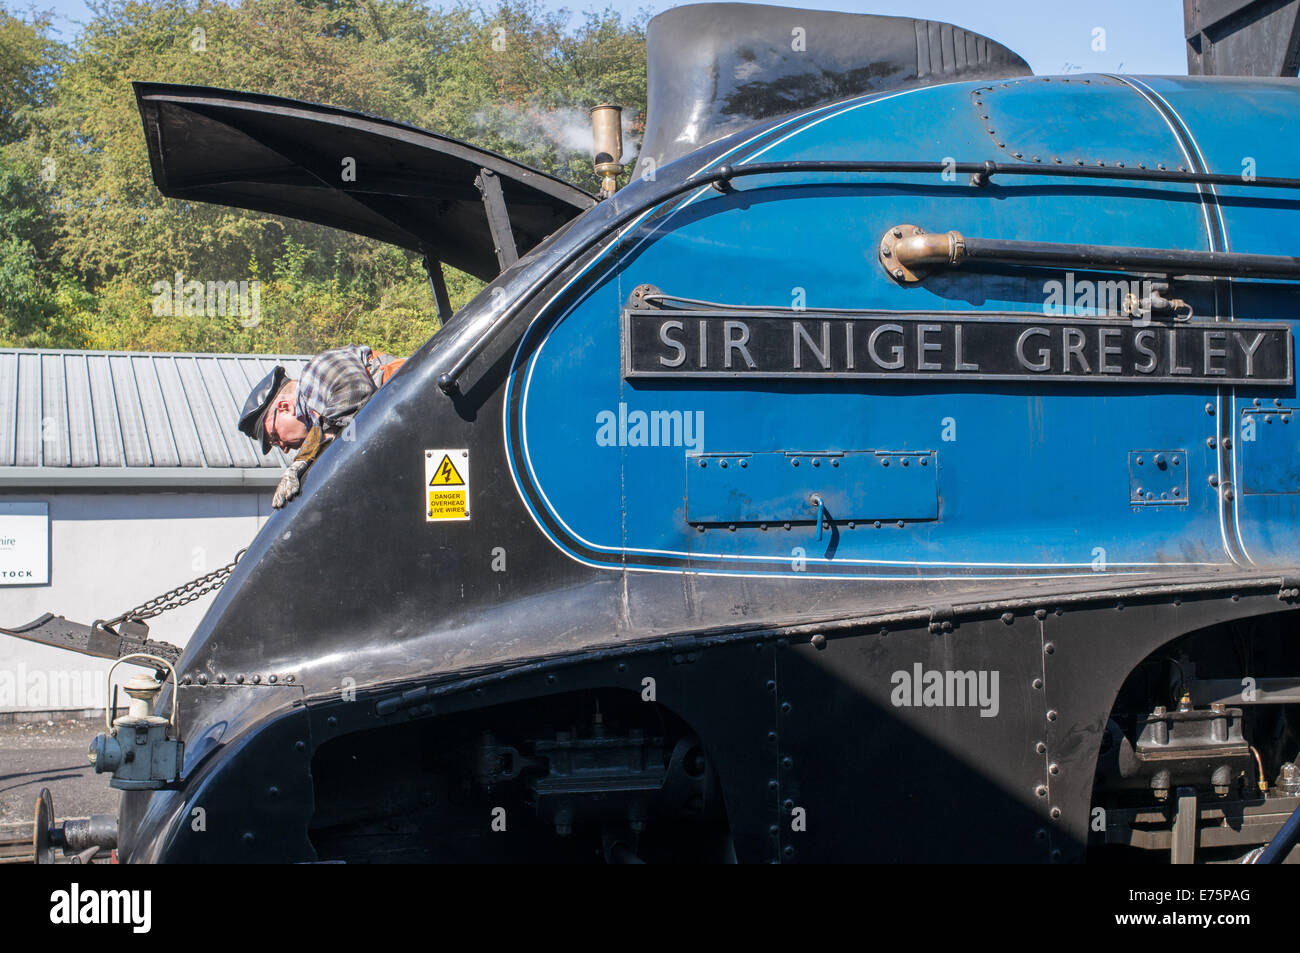 Limpieza del hombre smokebox de tren de vapor Sir Nigel Gresley Grosmont, North Yorkshire, Inglaterra, Reino Unido. Foto de stock